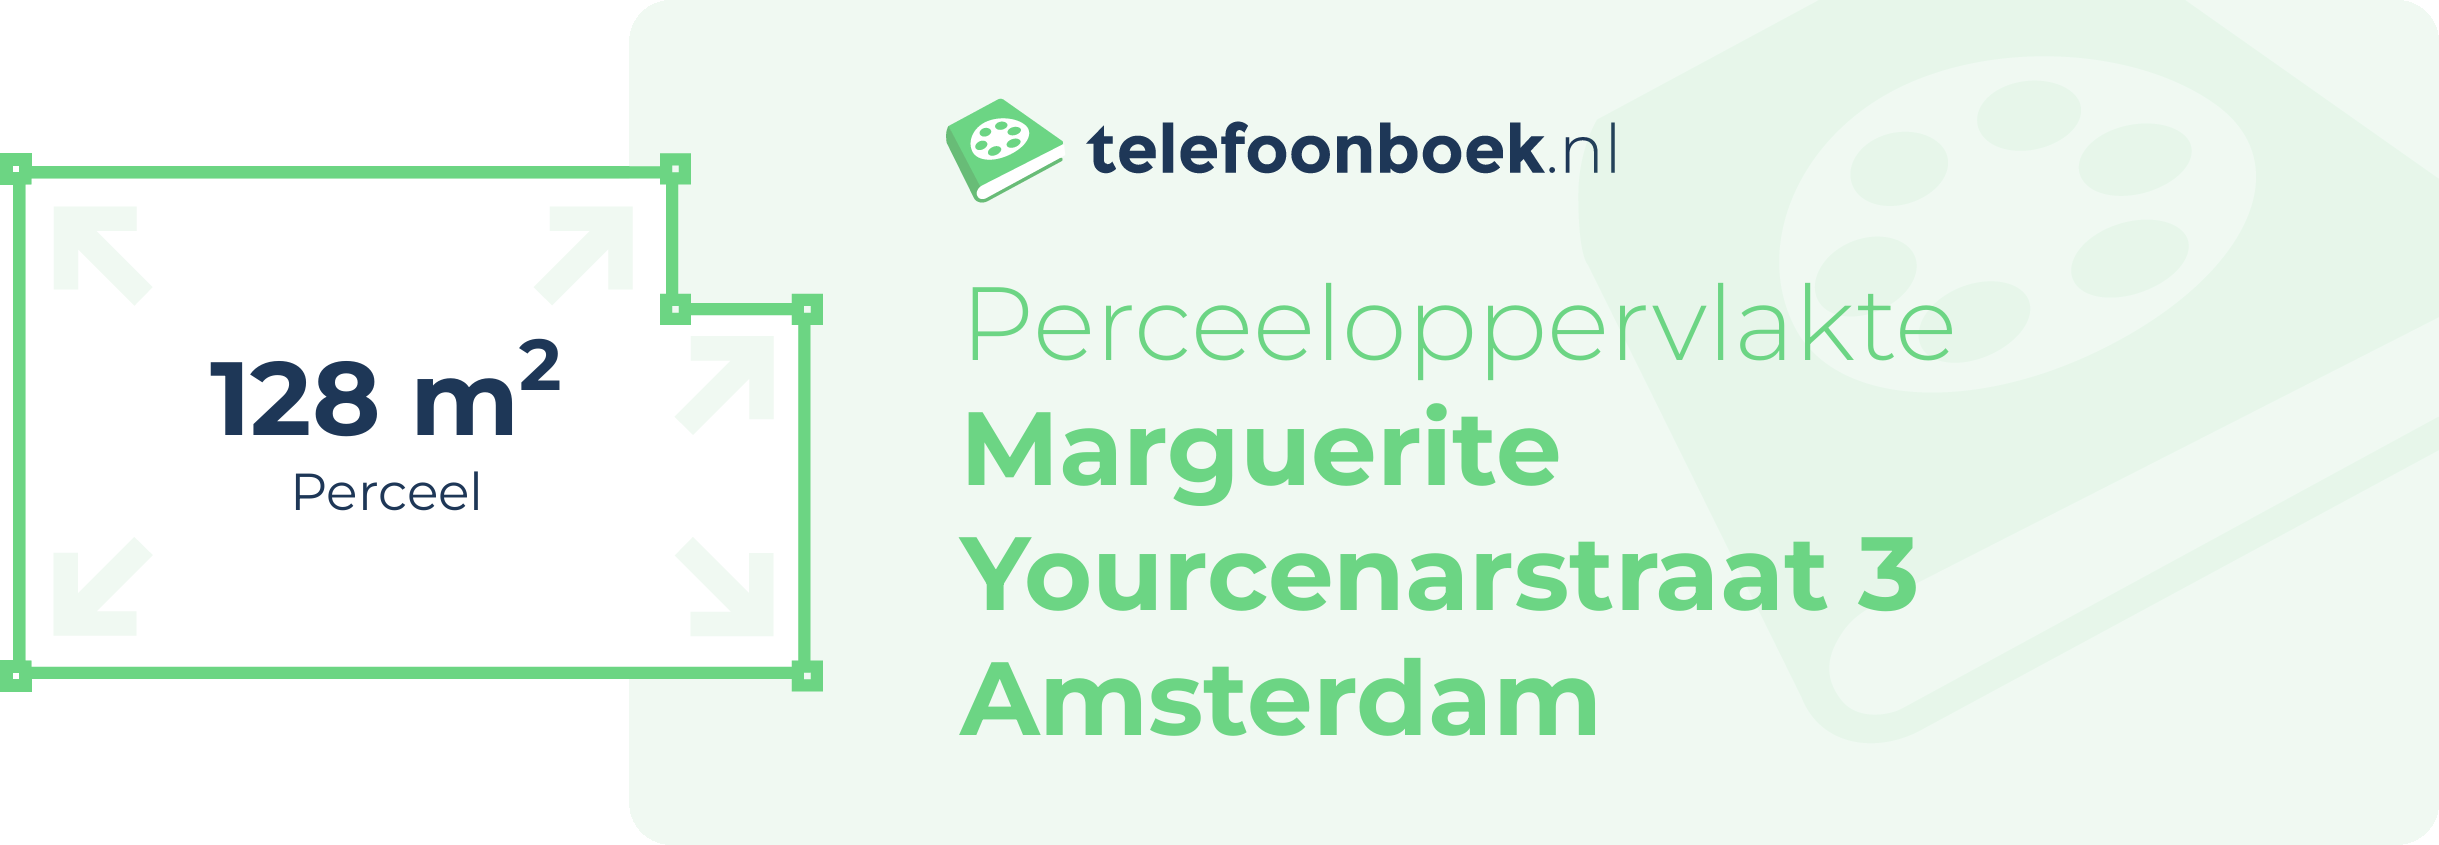 Perceeloppervlakte Marguerite Yourcenarstraat 3 Amsterdam